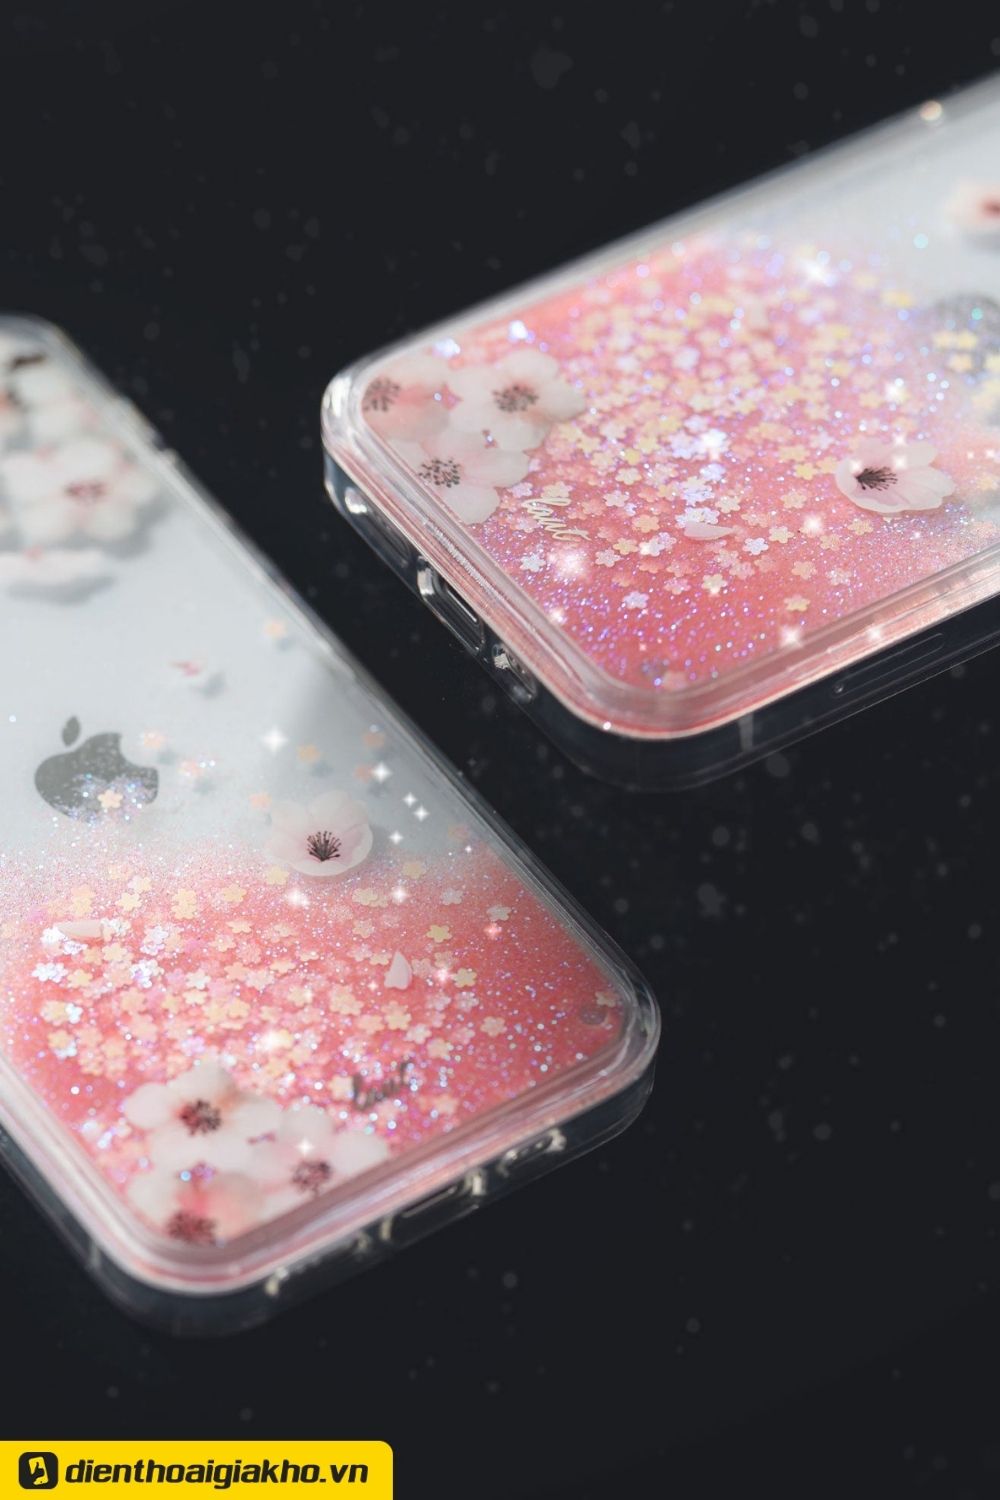 Các hạt cát lấp lánh đầy mê hoặc cùng những ngôi sao màu hồng pastel theo phong cách Sakura. Sẽ khiến người dùng “đam mê” ngắm nhìn ốp lưng iPhone suốt cả ngày dài.